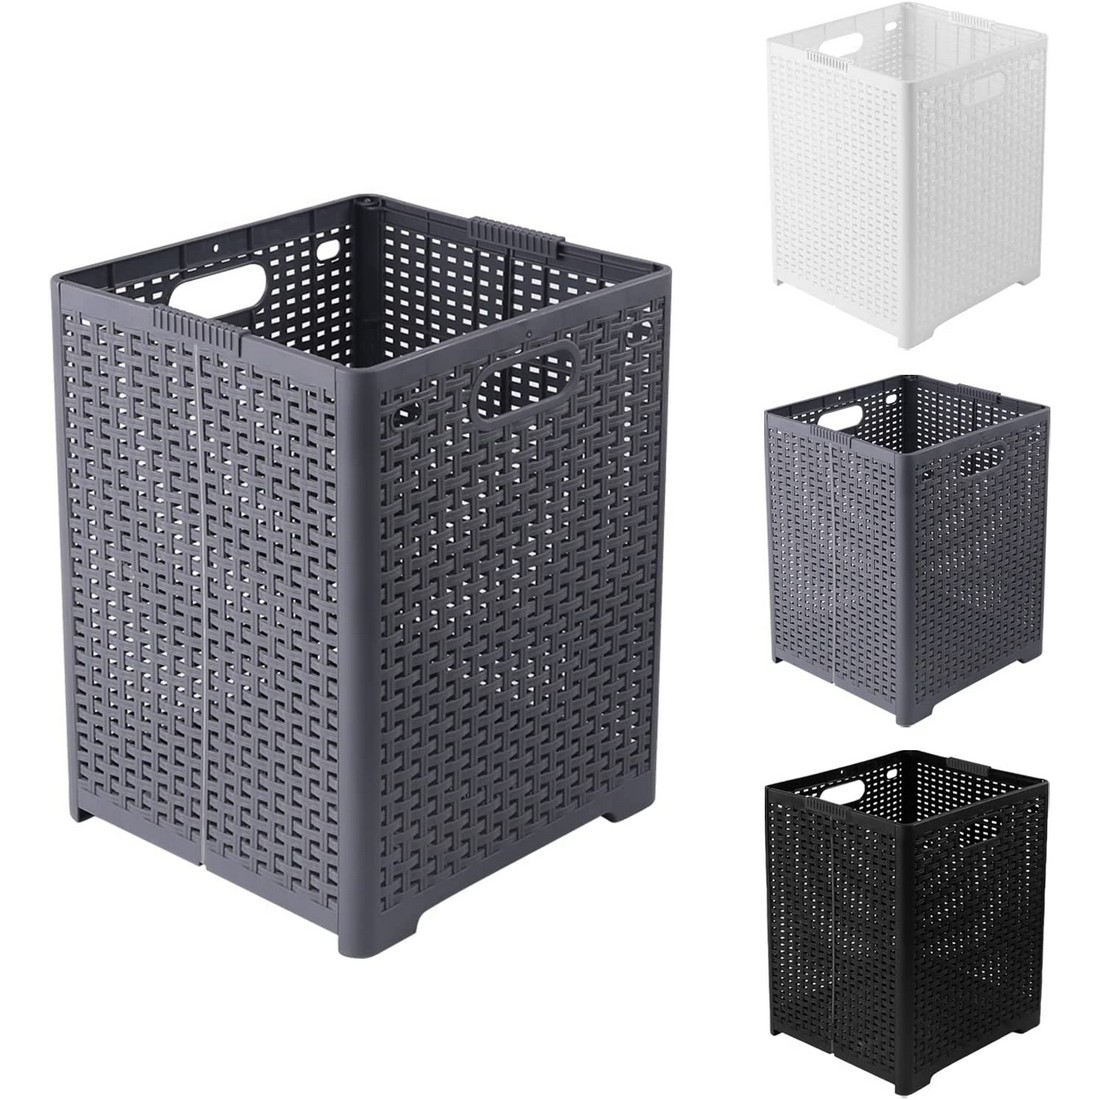  laundry basket basket storage basket folding laundry basket high capacity stylish handle attaching carrying possibility black 